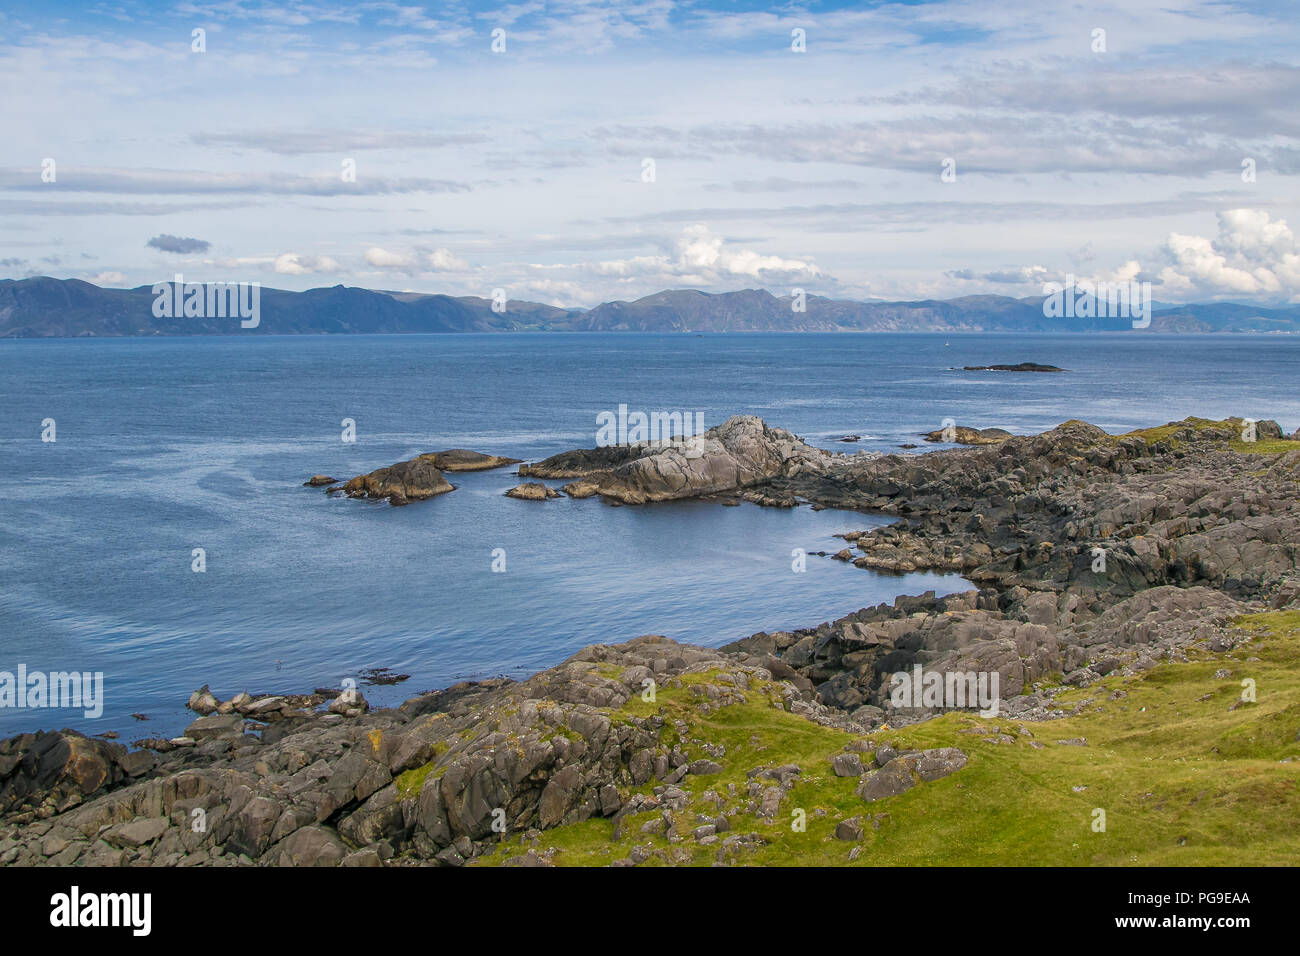 Küsten Norwegen. Ruhige Szene von natürlicher Schönheit. Felsige Küstenlinie, blau bewölkter Himmel, Berge am Horizont. Stockfoto